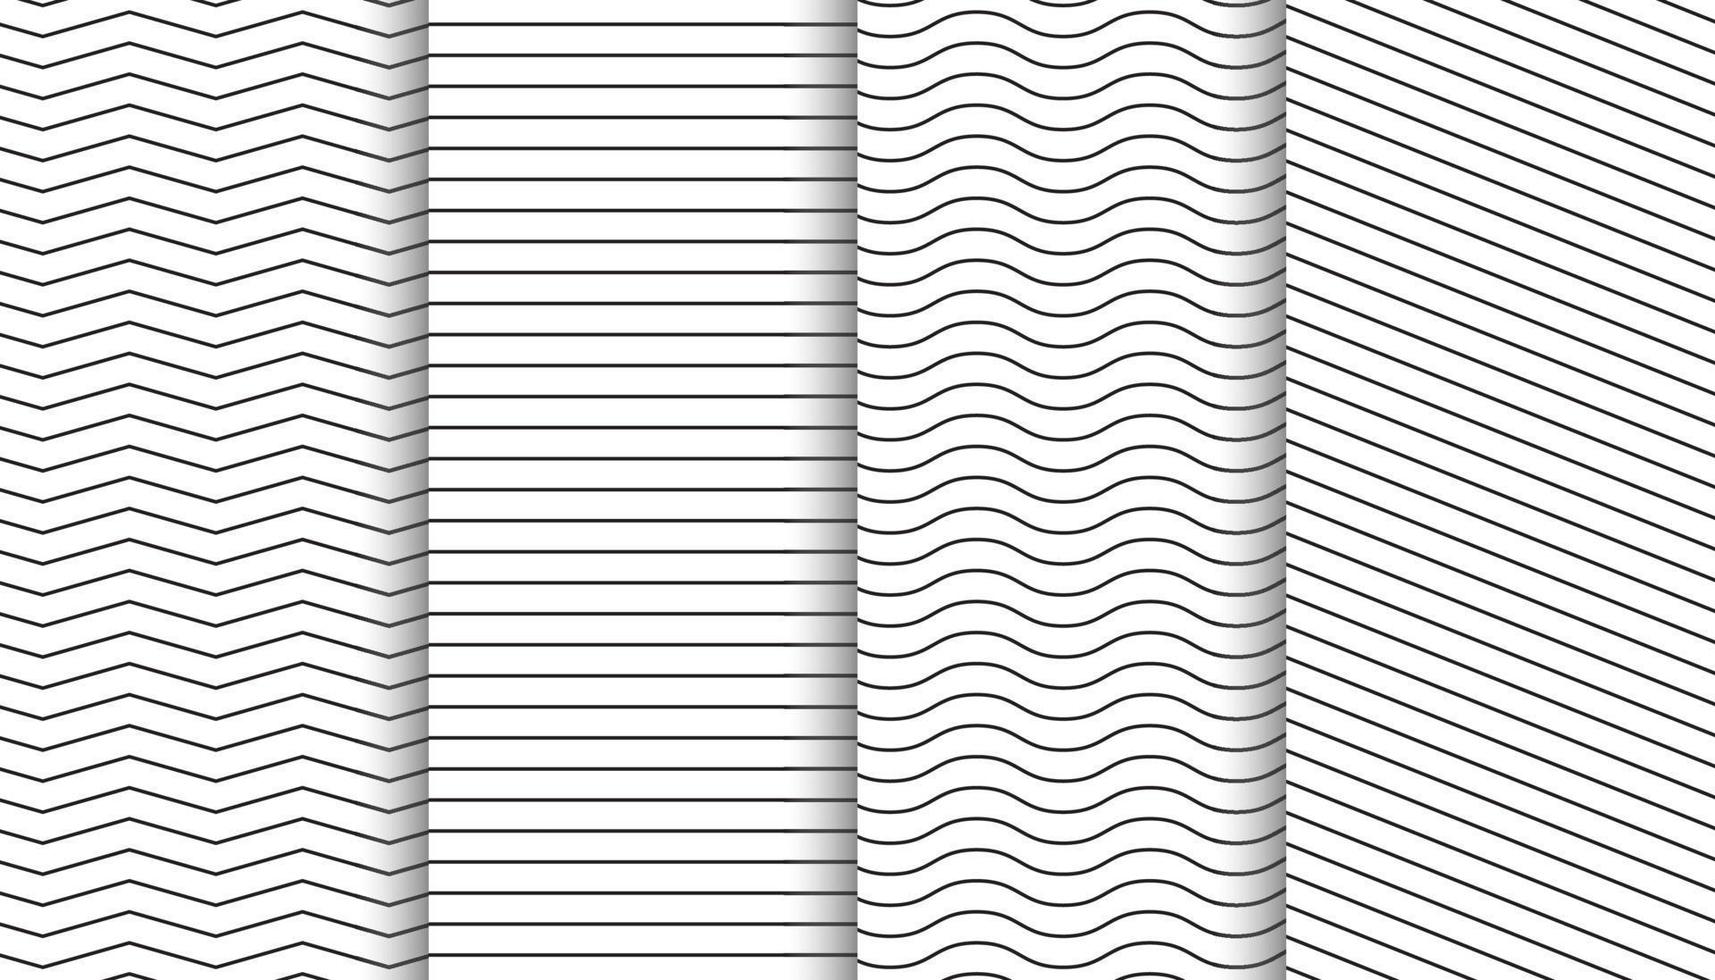 elegante schone witte minimale geometrische patronen set. vector illustratie